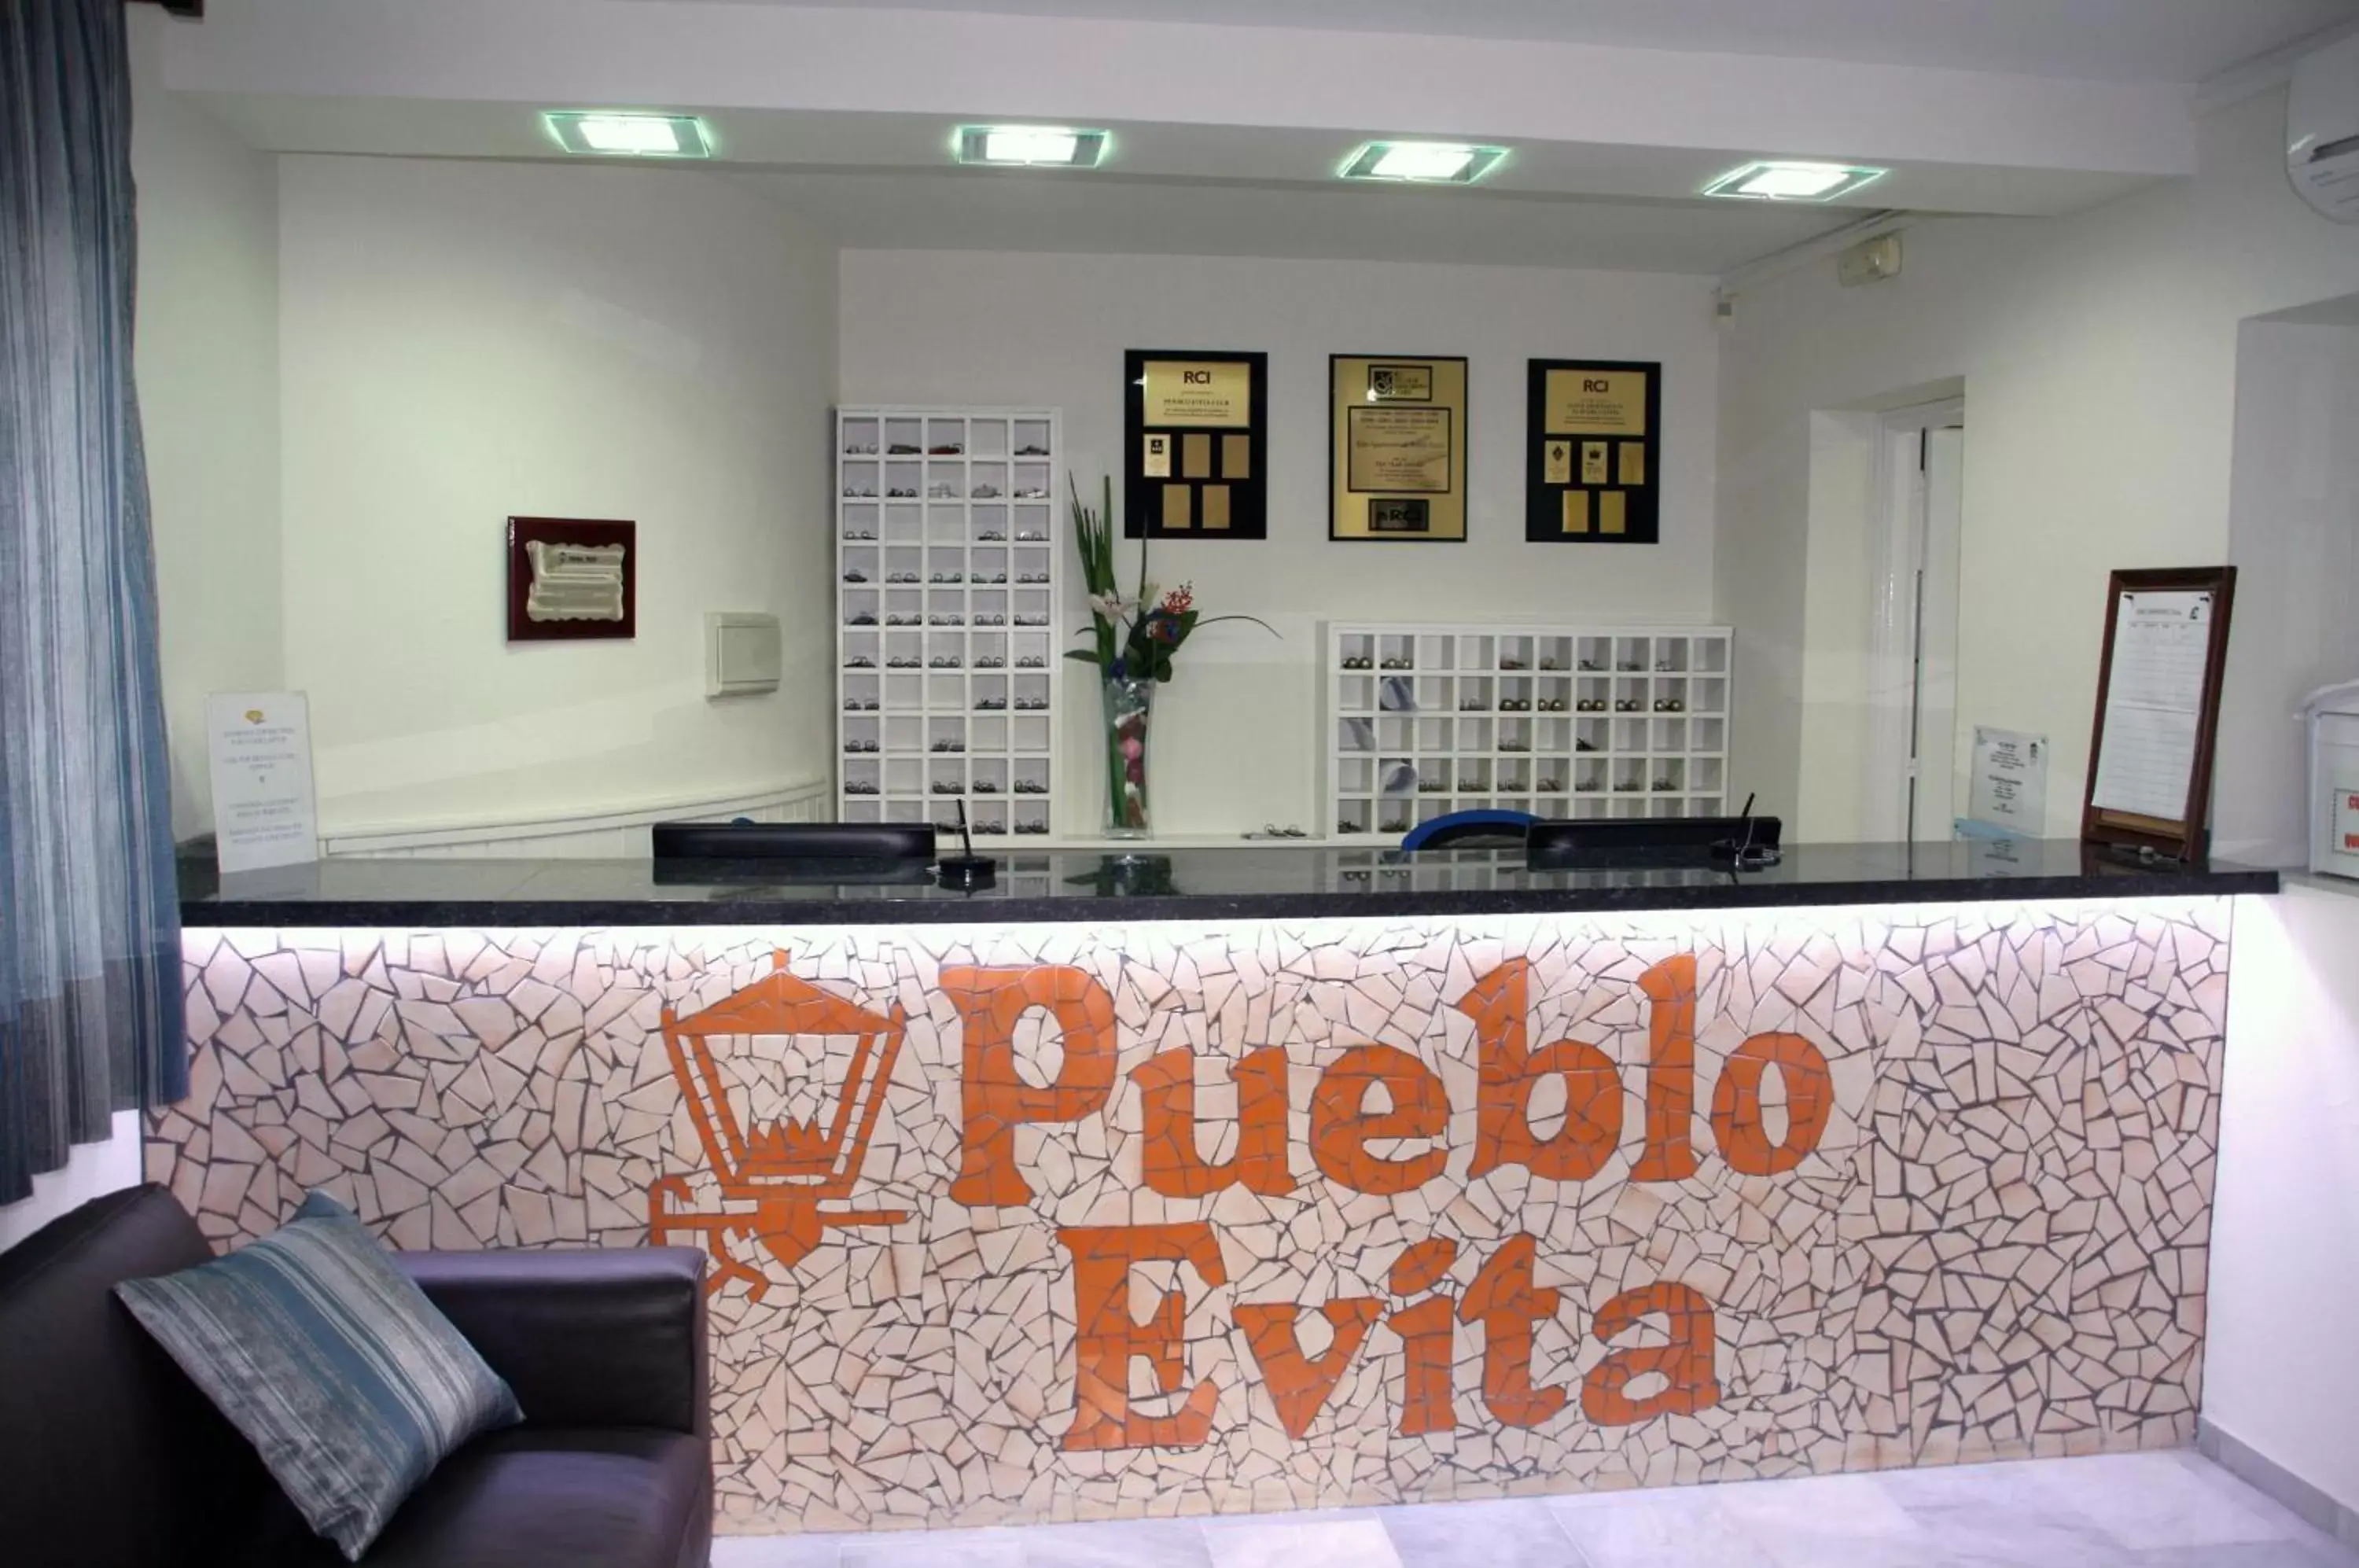 Lobby or reception in Pueblo Evita